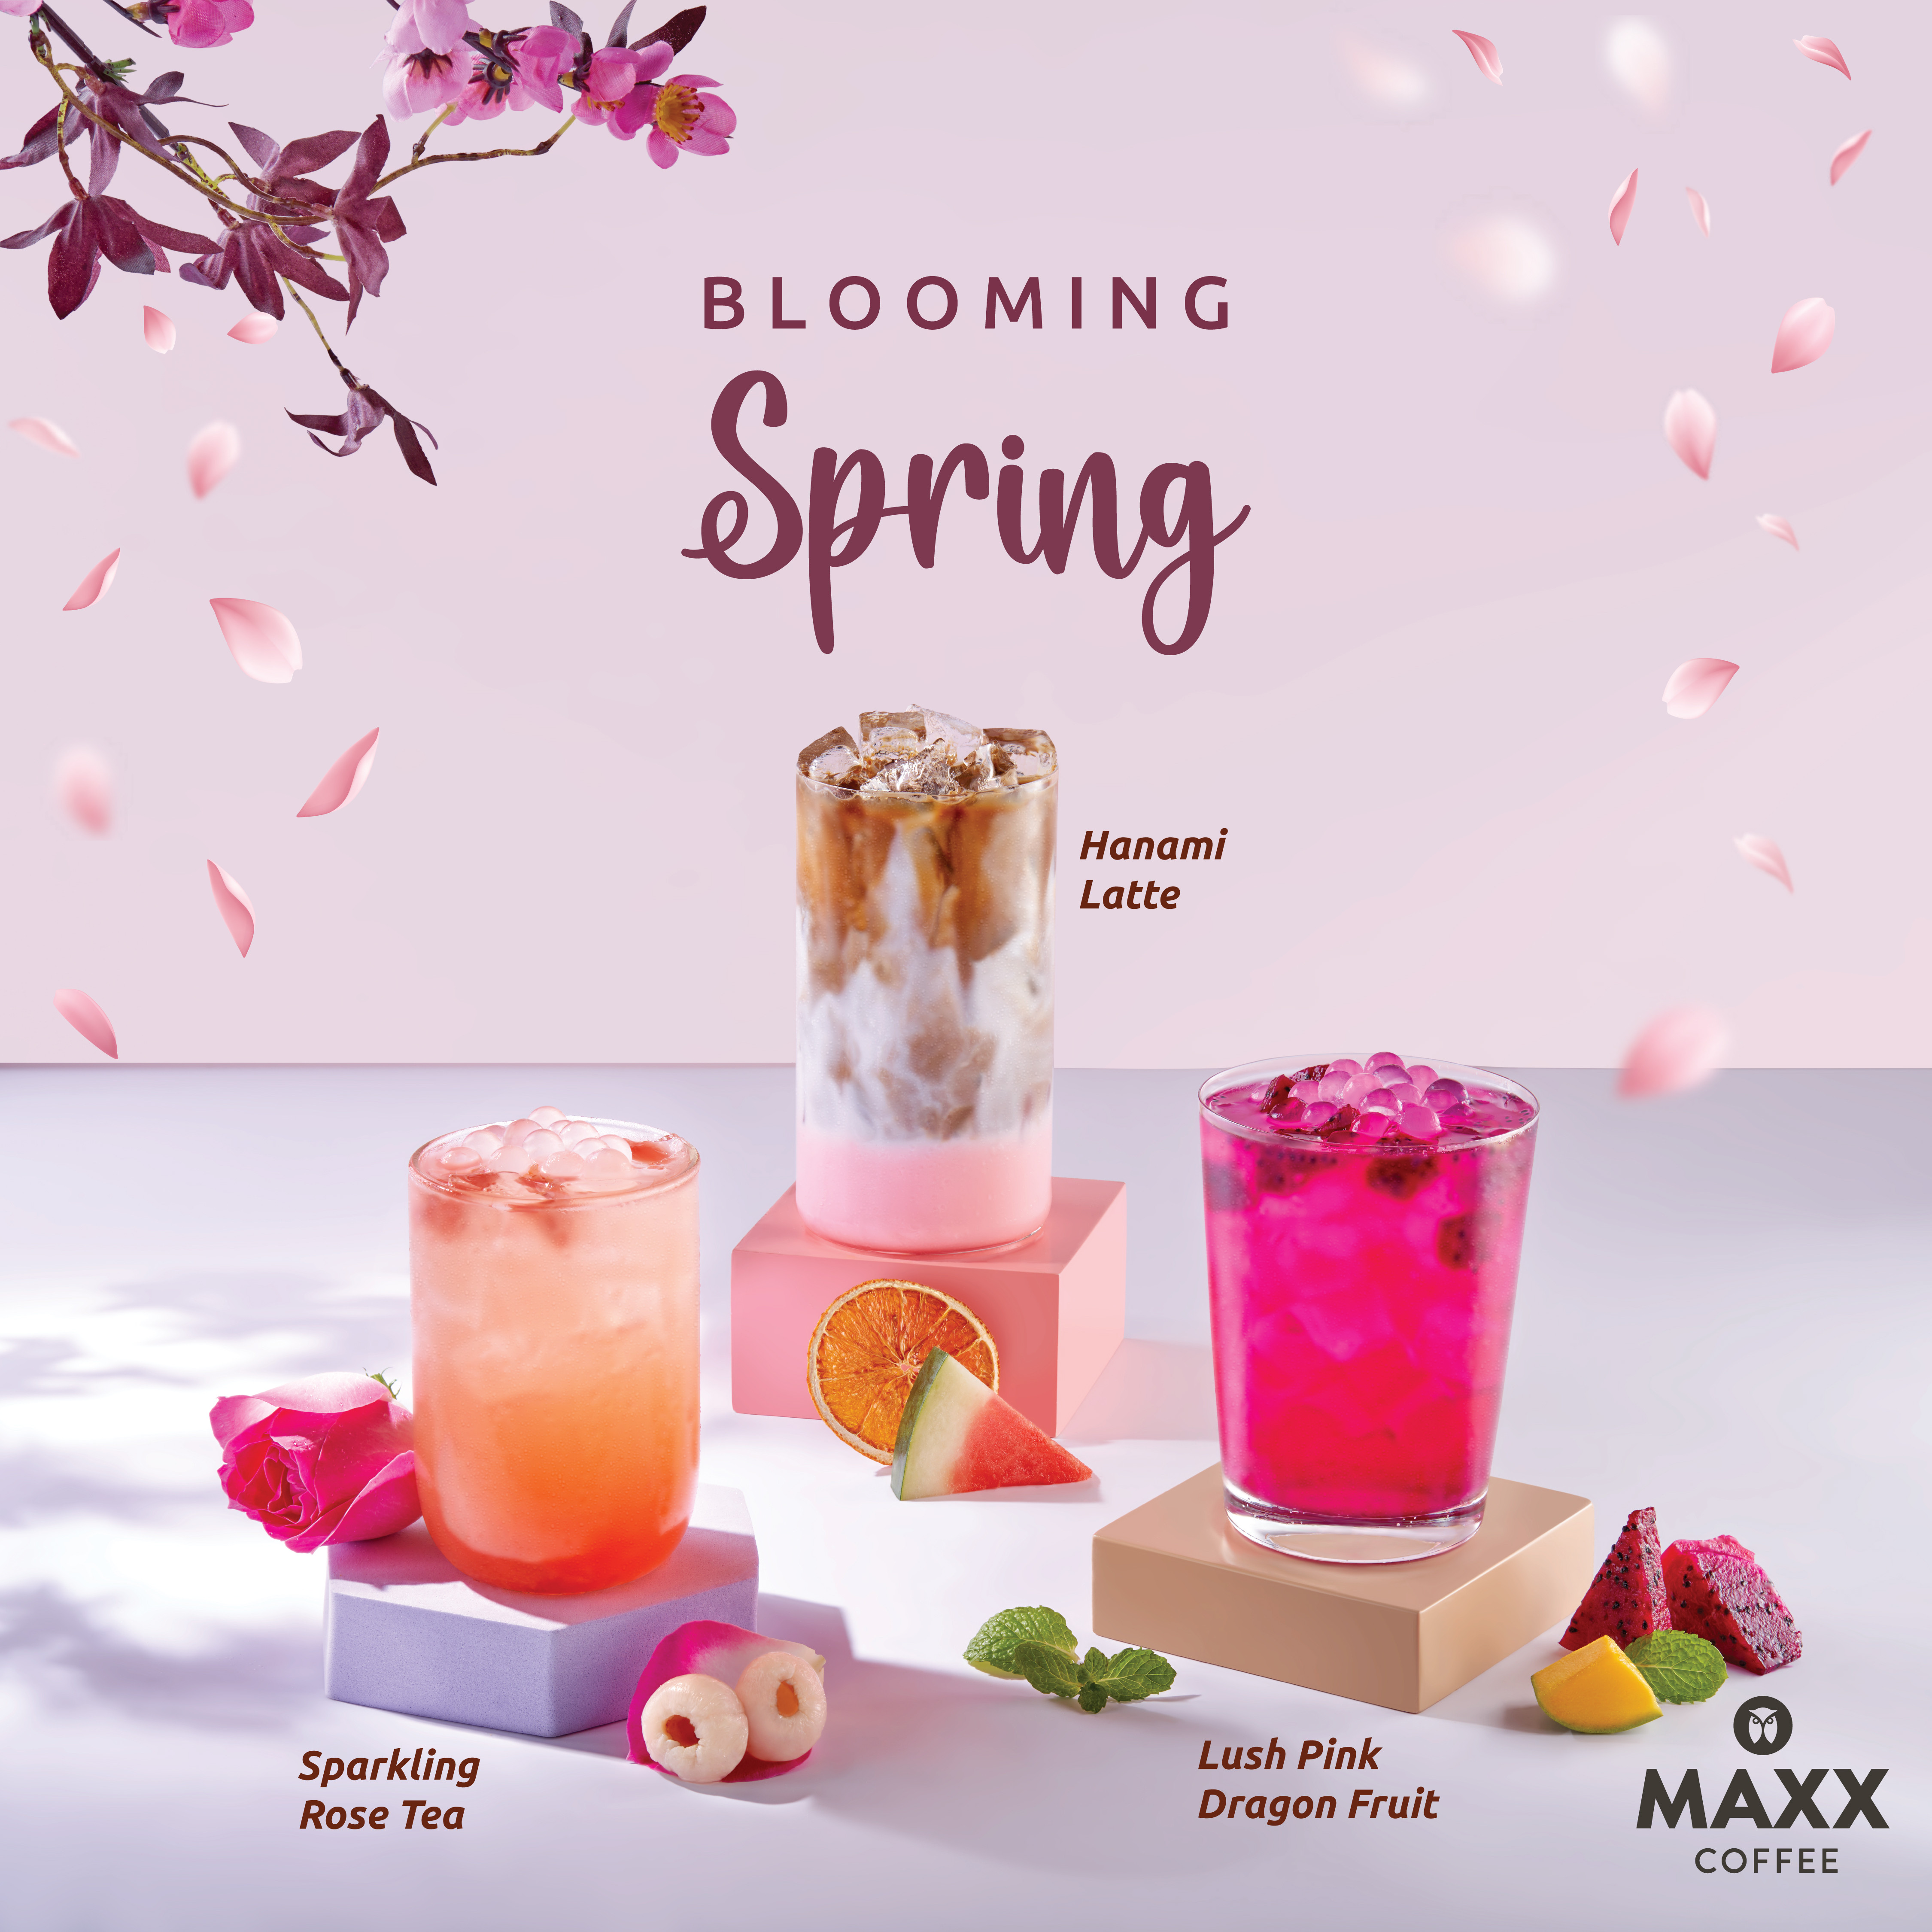 Edisi Spring, Maxx Coffee Hadirkan Menu Dengan Konsep Simple Namun Menarik